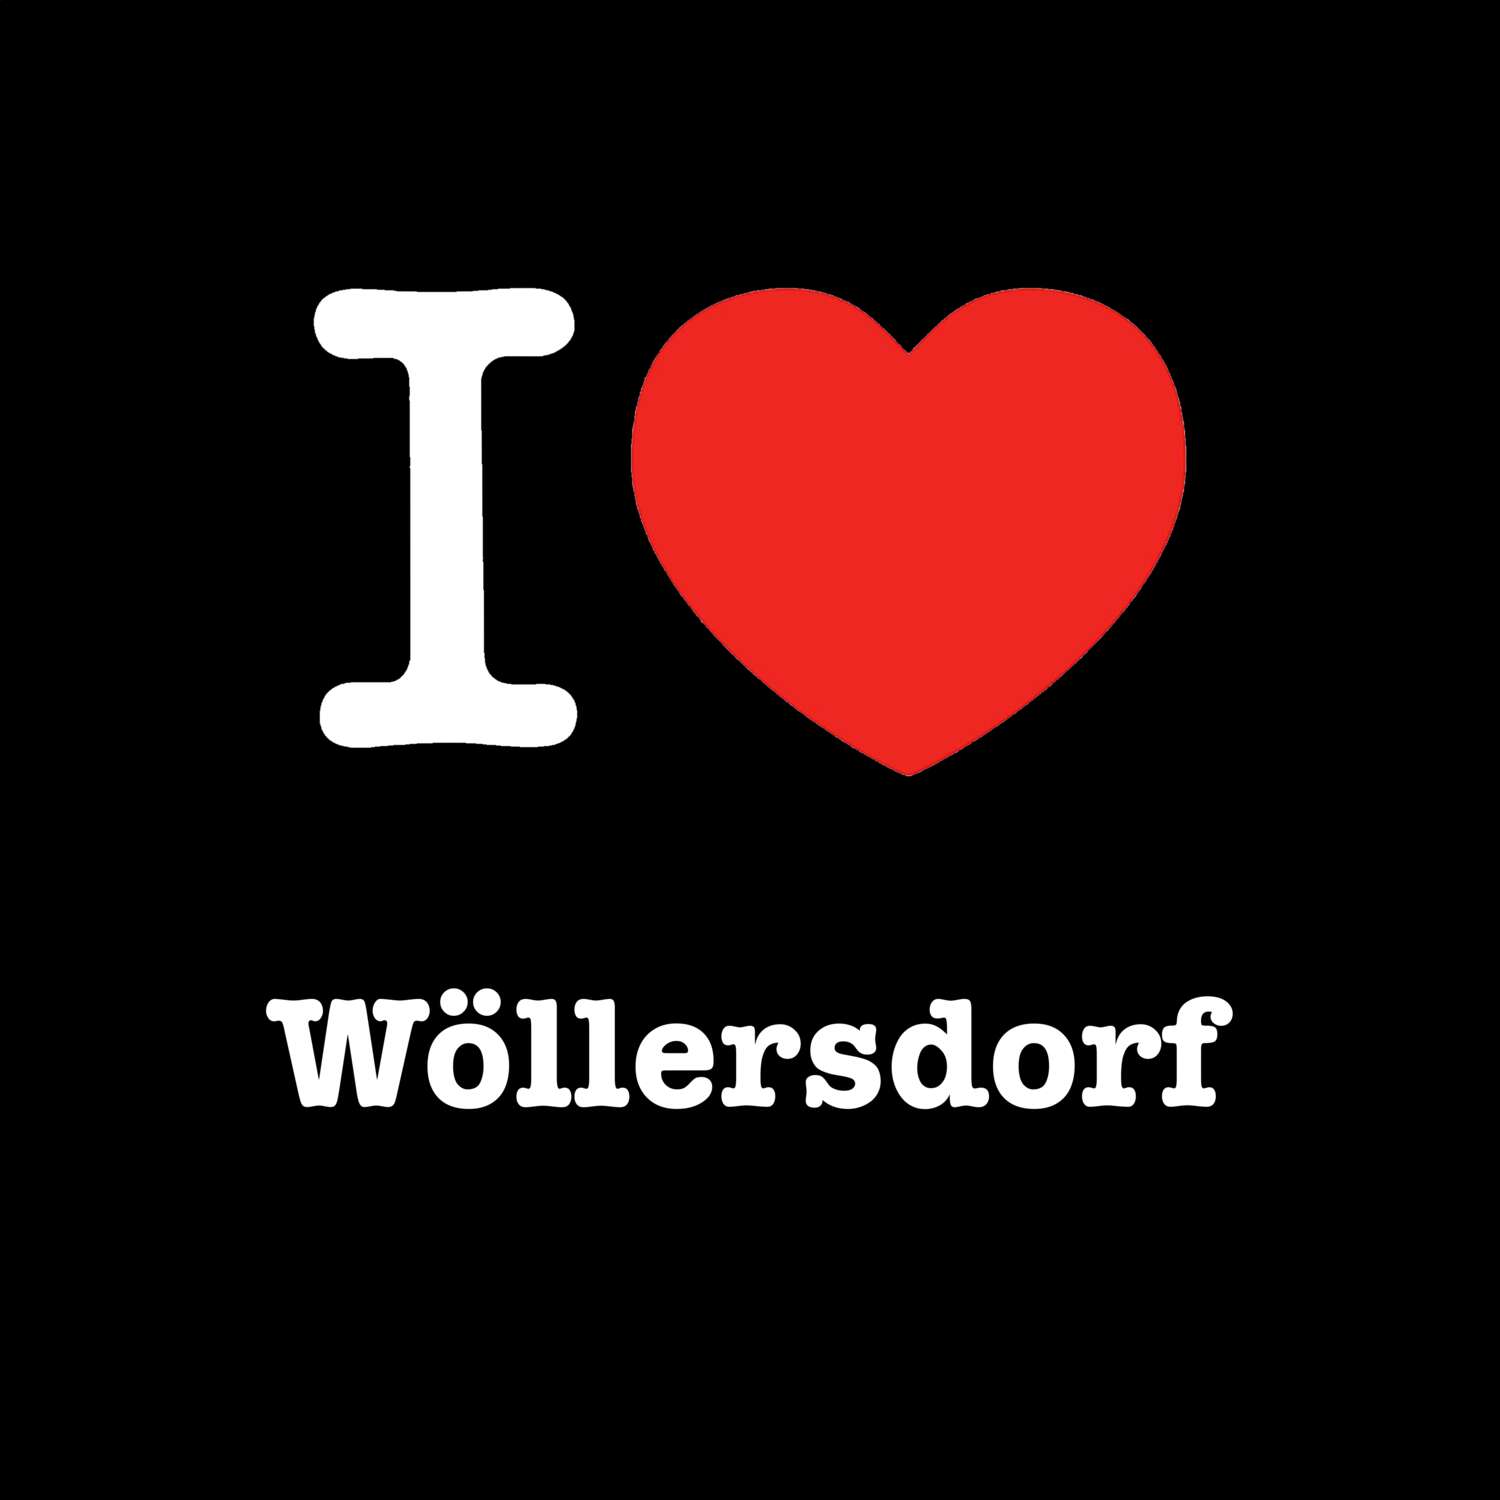 Wöllersdorf T-Shirt »I love«